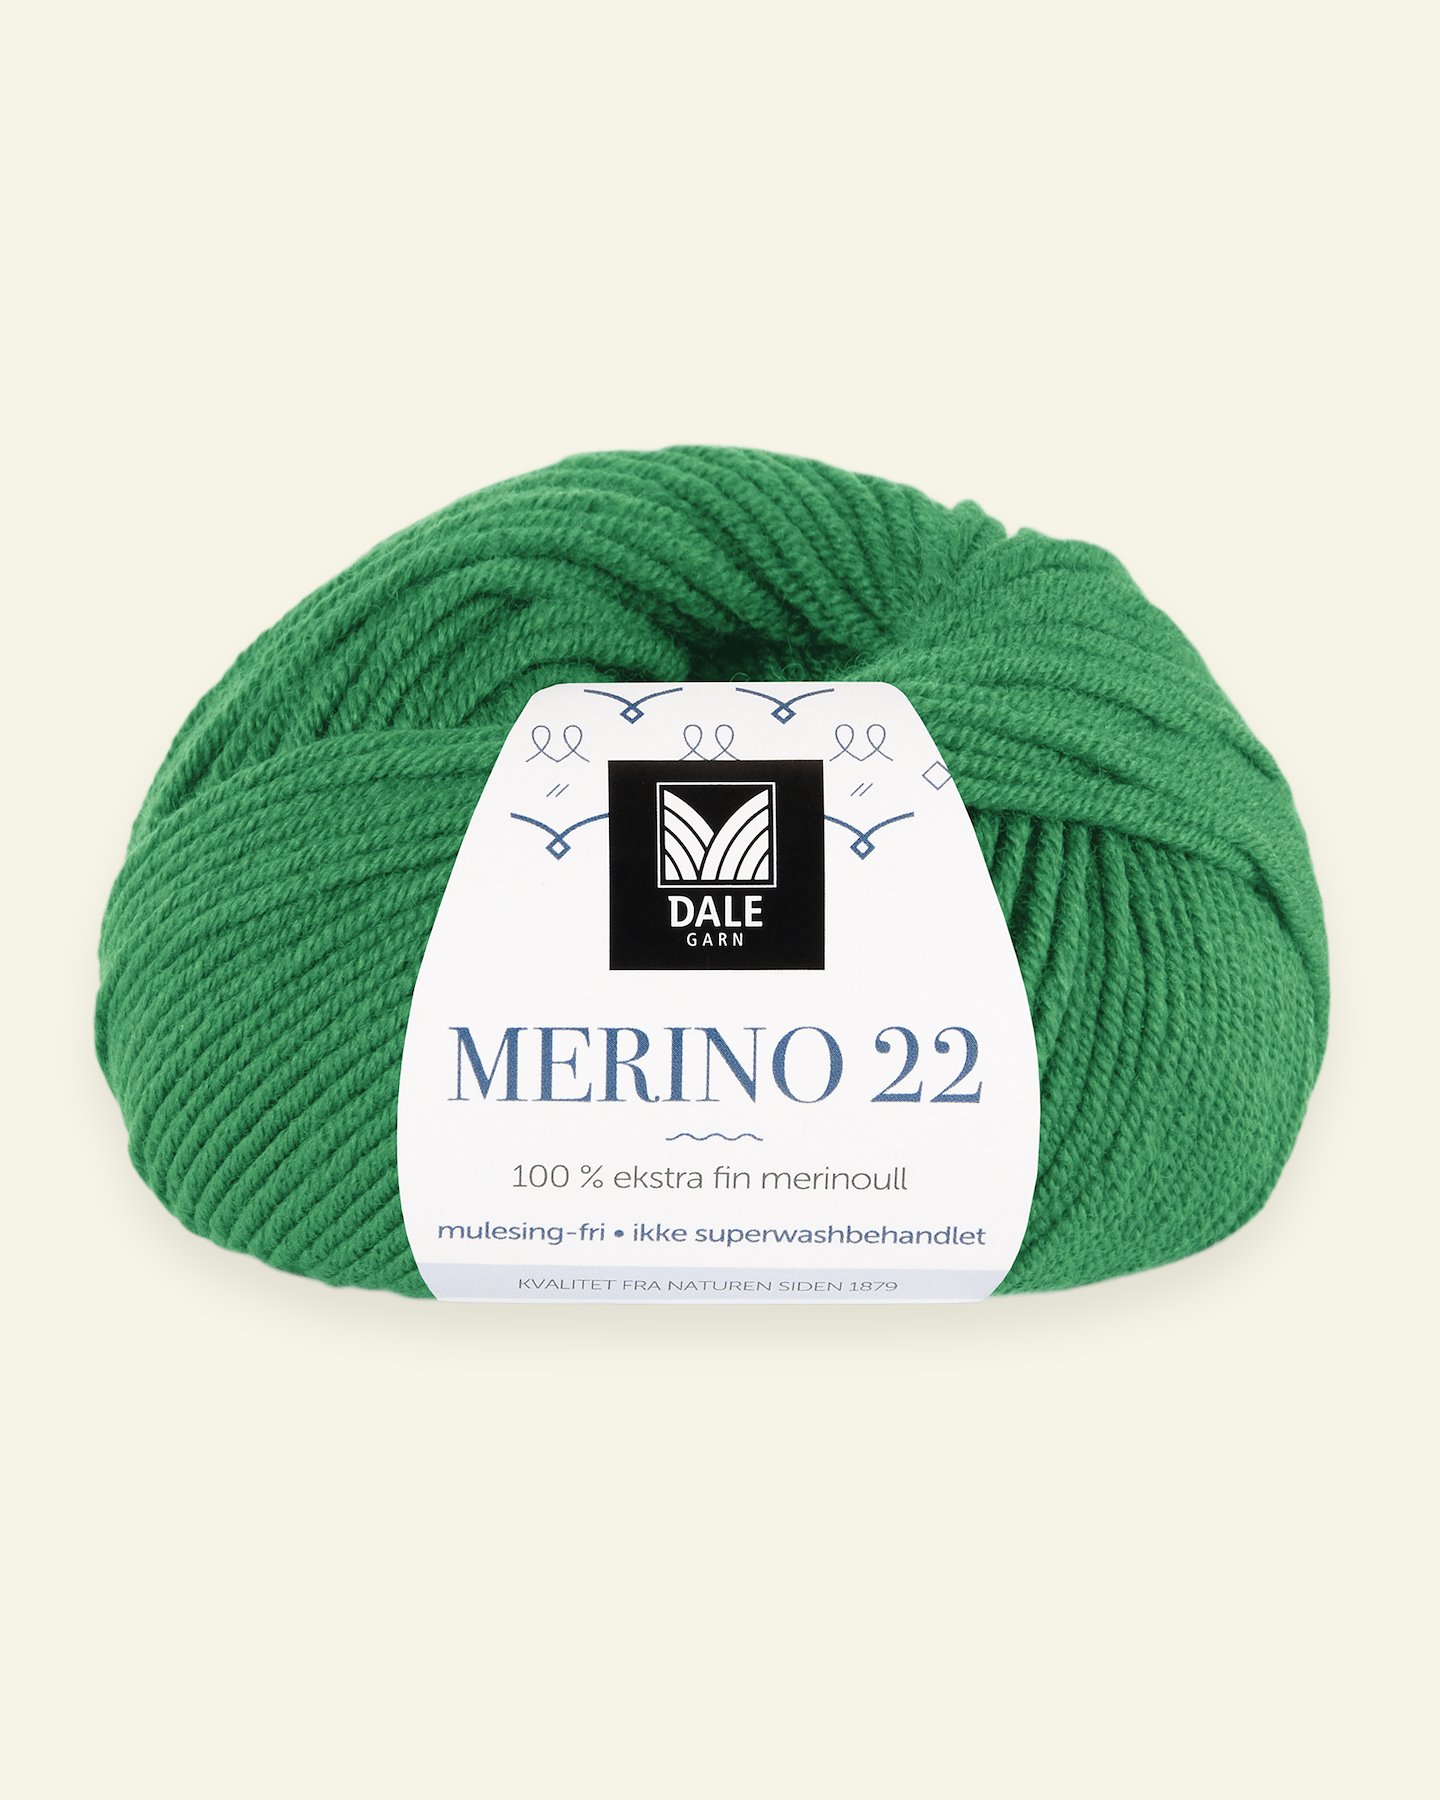 Dale Garn, 100% extra fine merino wool yarn, "Merino 22", green 90000392_pack